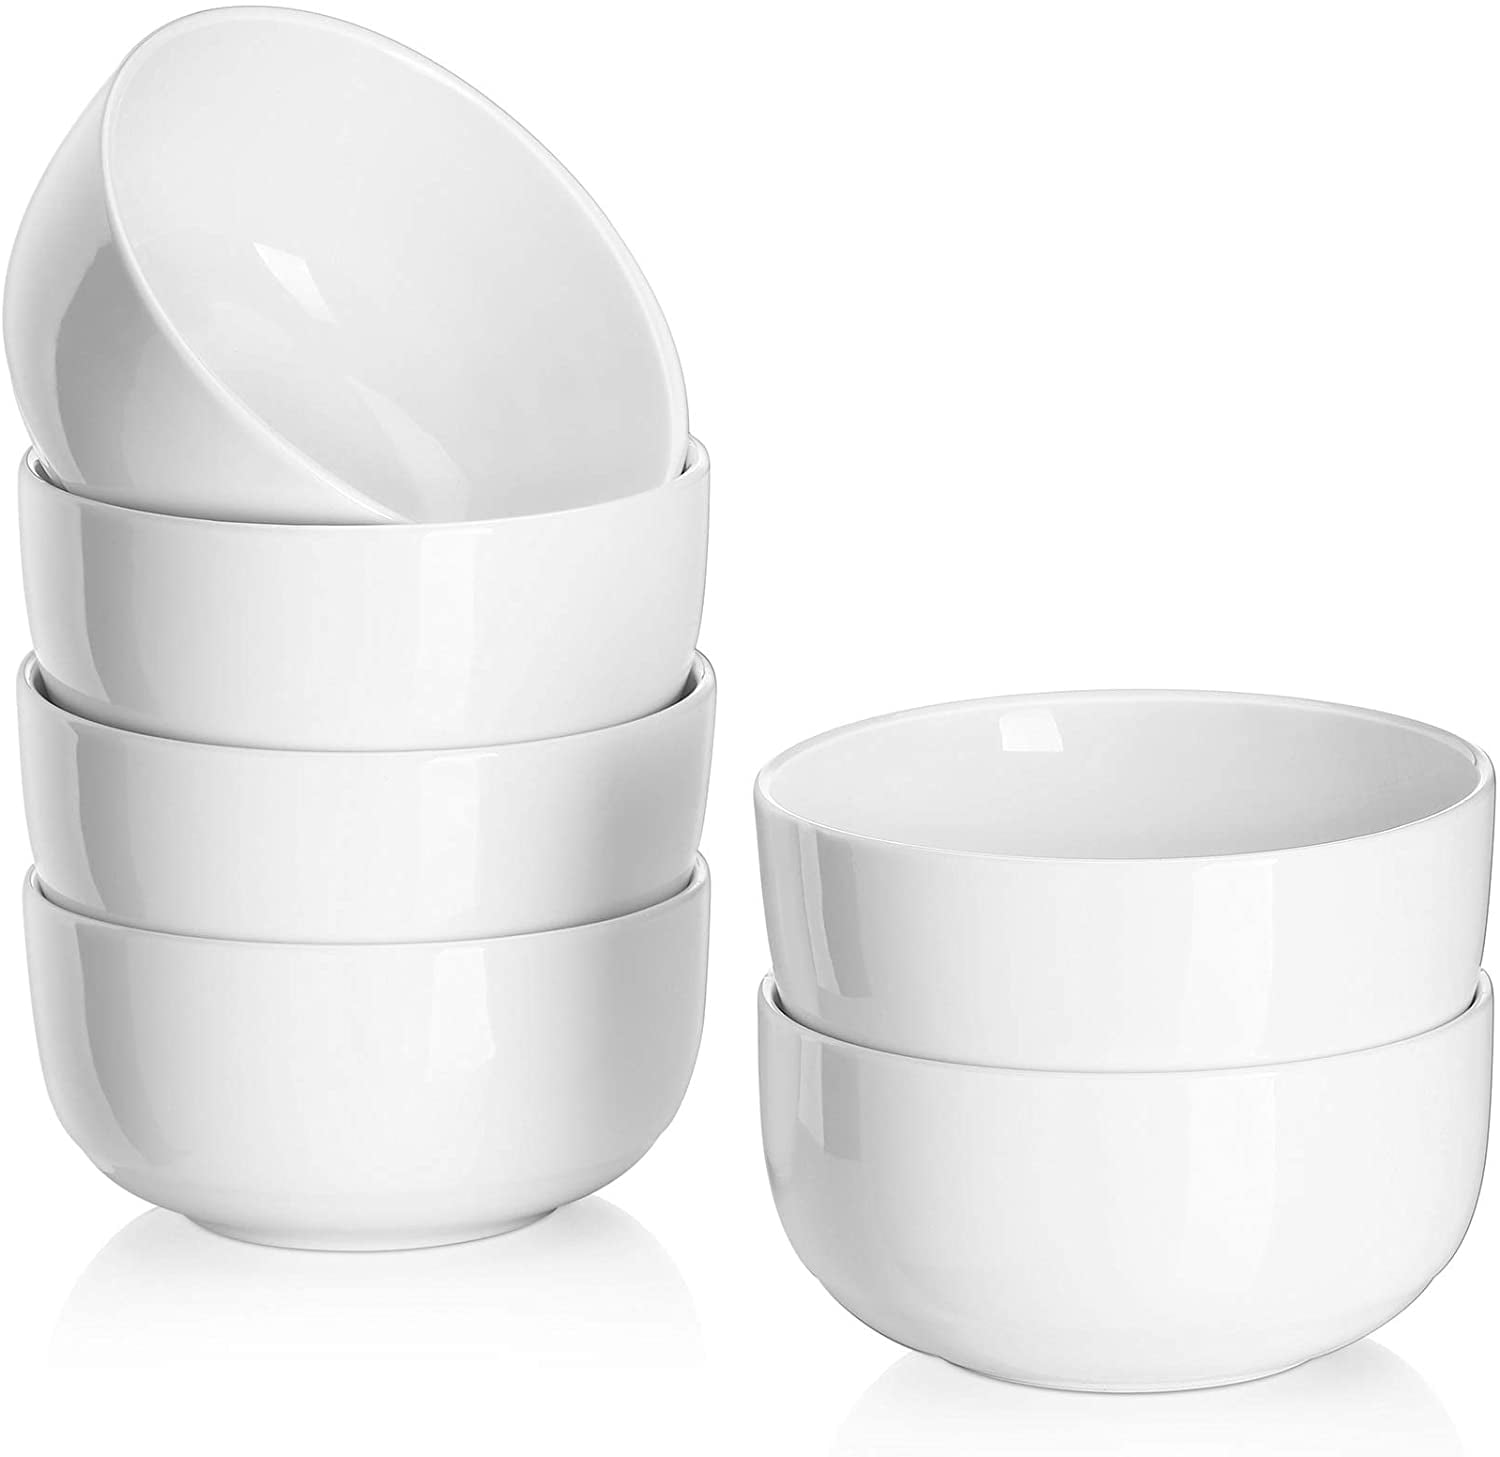 Pair of 2 White Soup Bowls Porcelain Lion Head Handles Soup Bowls Dishes 